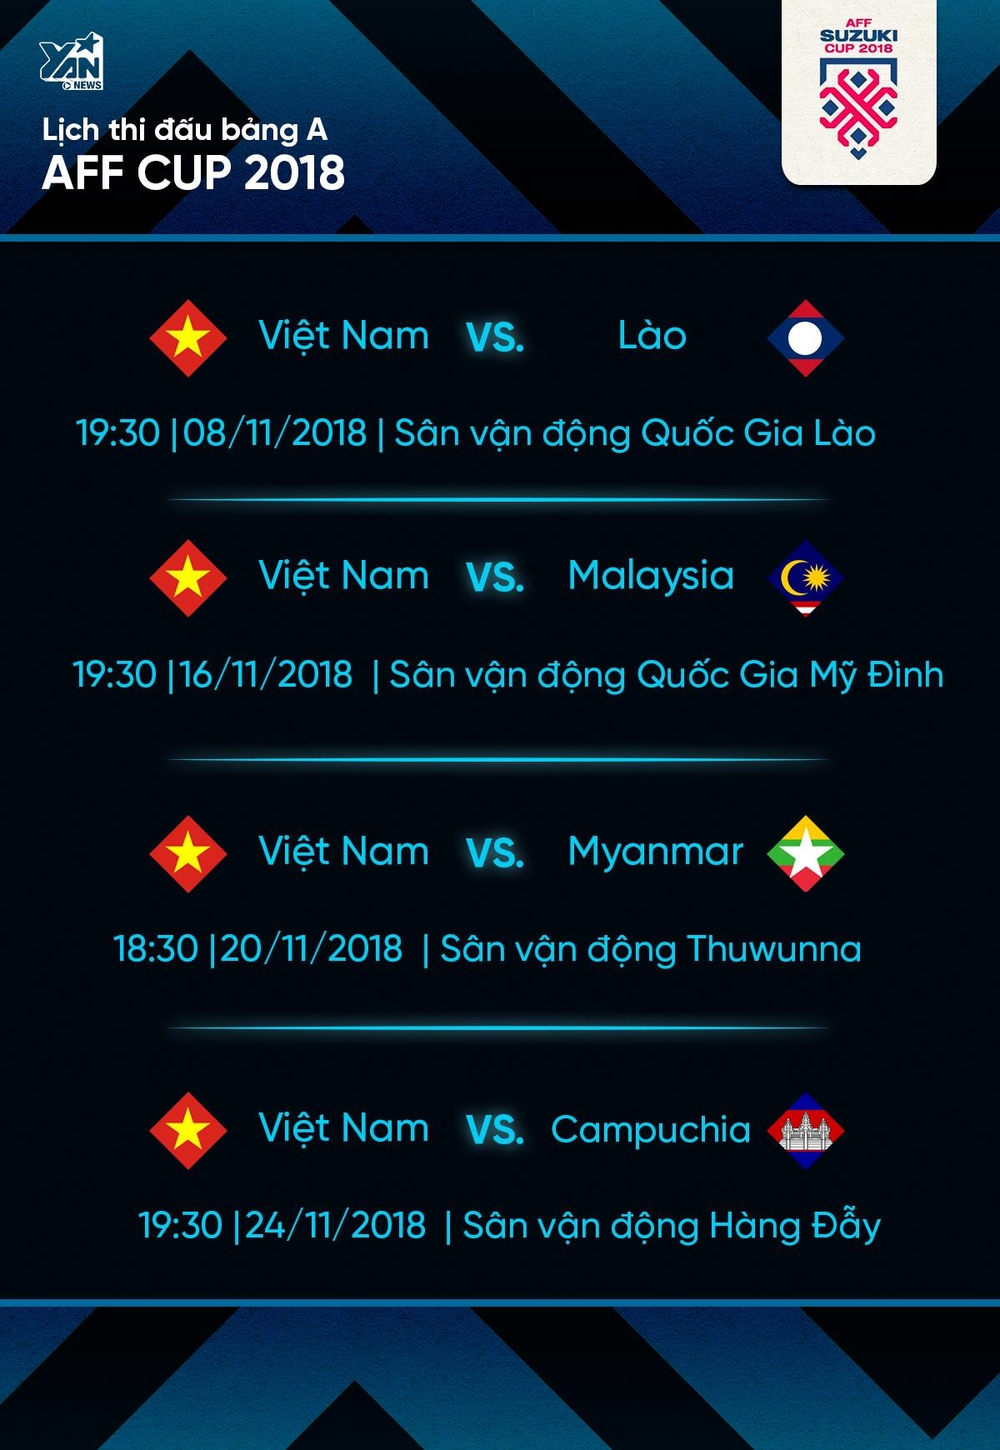 
Lịch thi đấu vòng bảng của đội tuyển Việt Nam tại AFF Cup 2018.